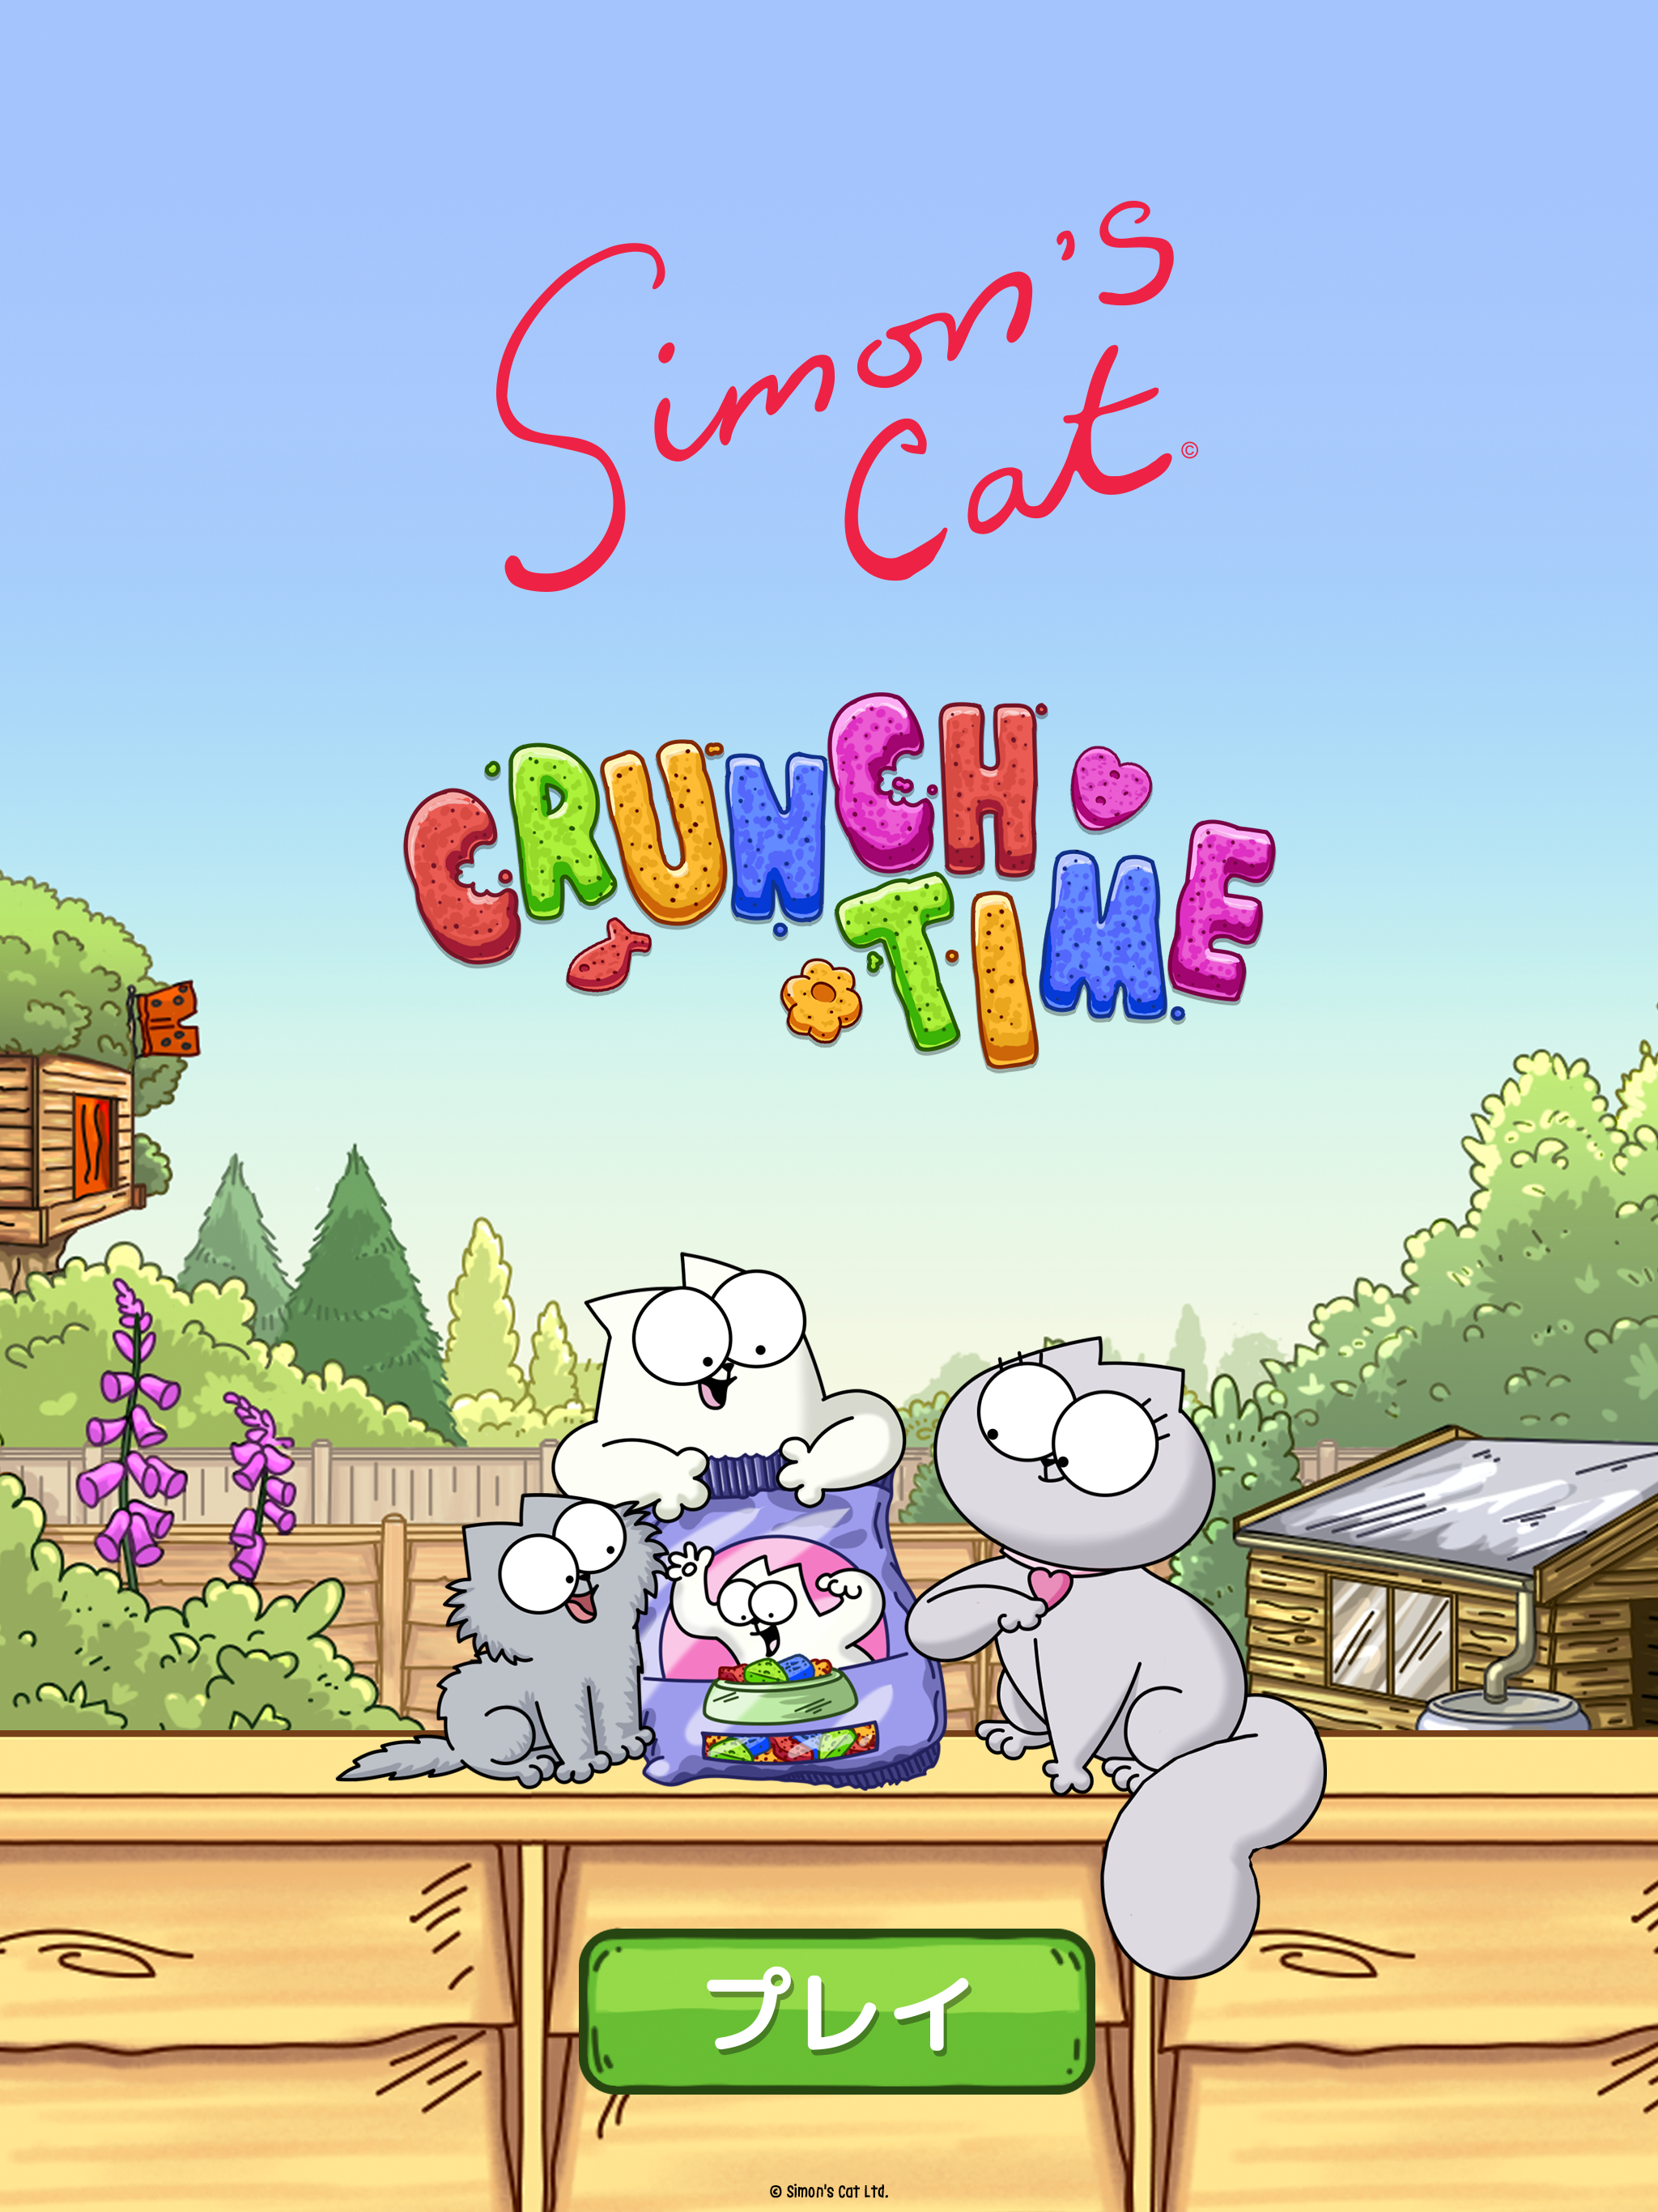 Simon’s Cat - Crunch Time!のキャプチャ